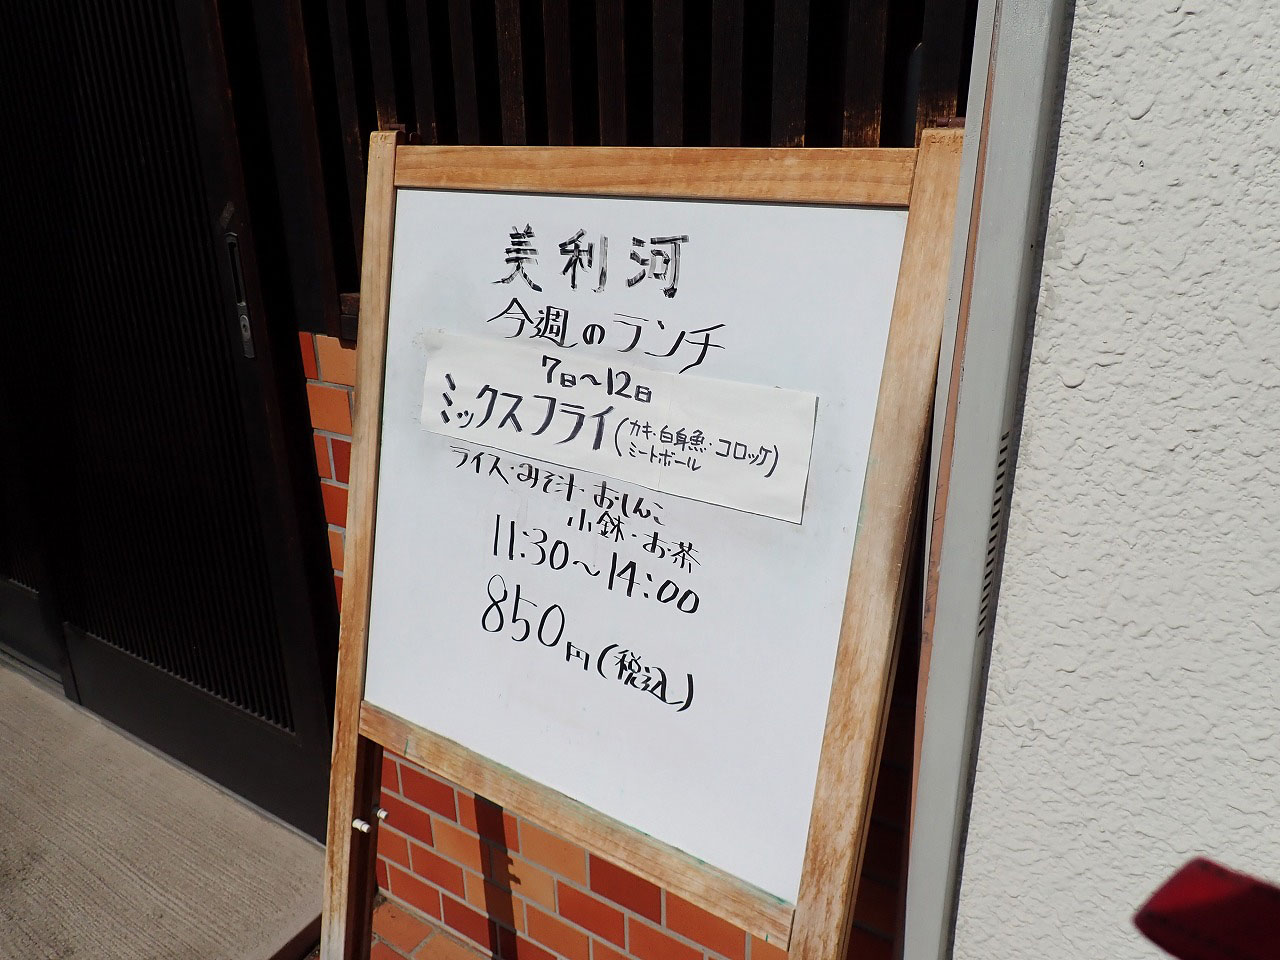 霞ヶ関駅の美味しい定食屋さん『美利河』